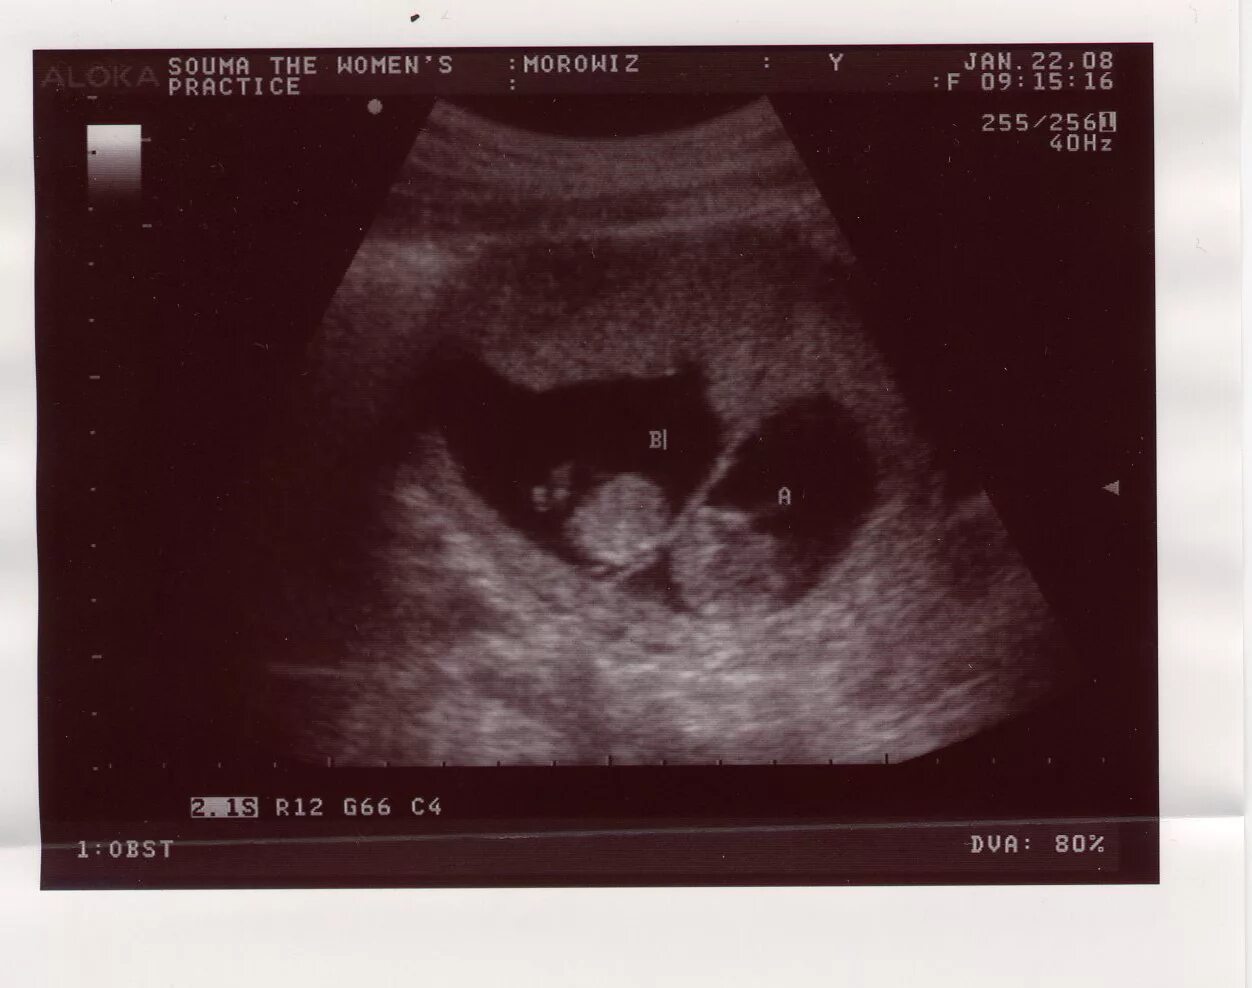 Двойня 7 недель. УЗИ 12 недель беременности двойня. Монохориальная моноамниотическая двойня УЗИ 7 недель. Монохориальная двойня УЗИ 7 недель. УЗИ 7 недель беременности двойня.